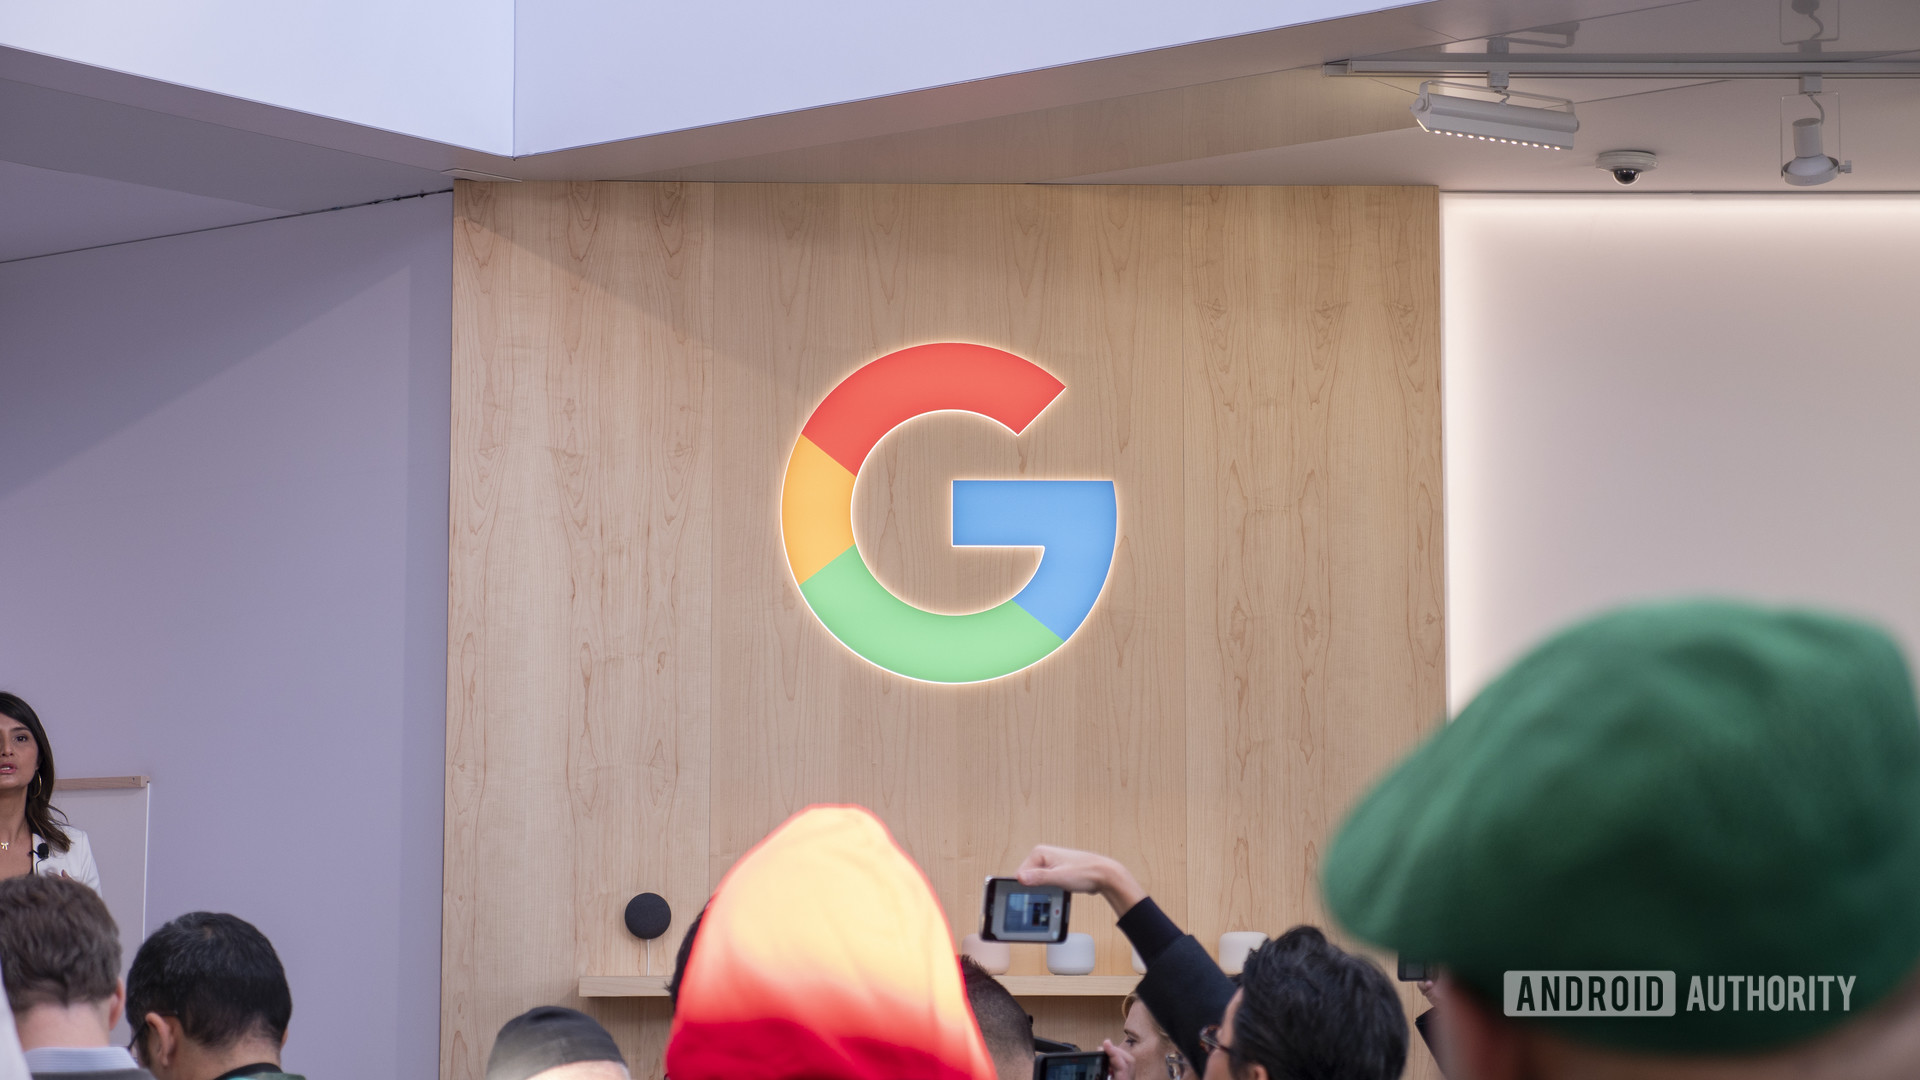 Google G logo at CES 20202